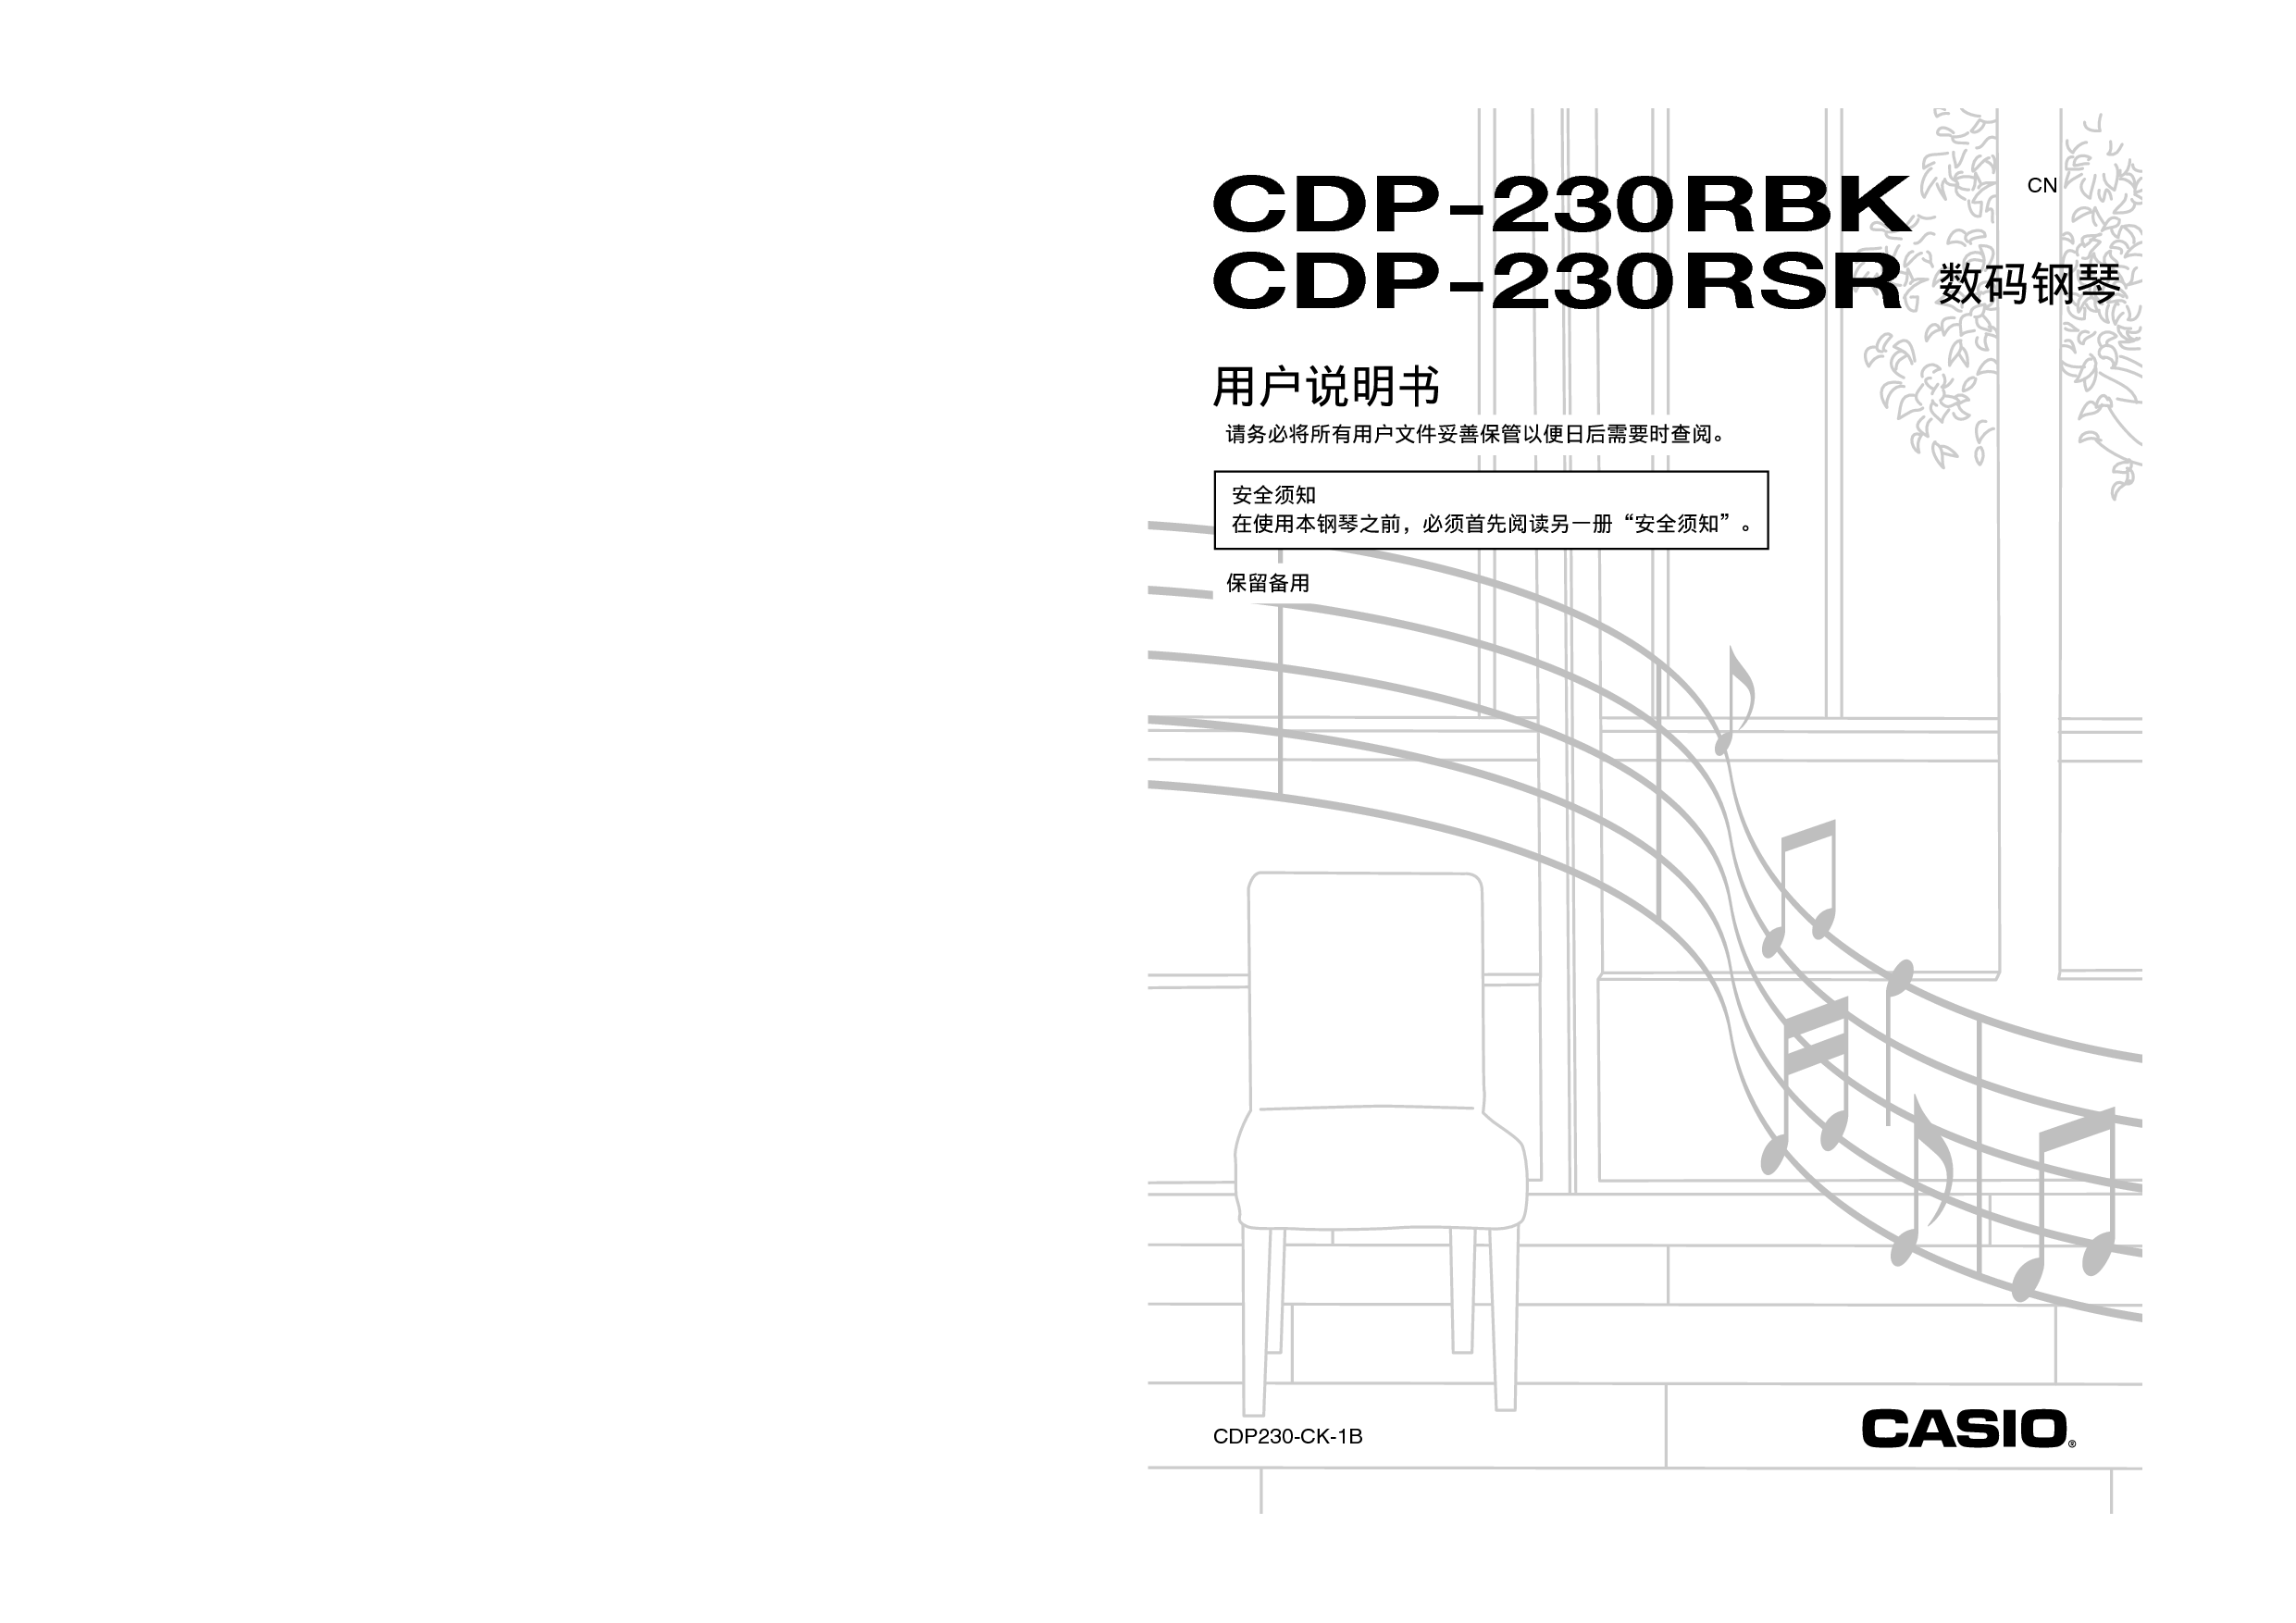 卡西欧 Casio CDP-230RBK 使用说明书 封面